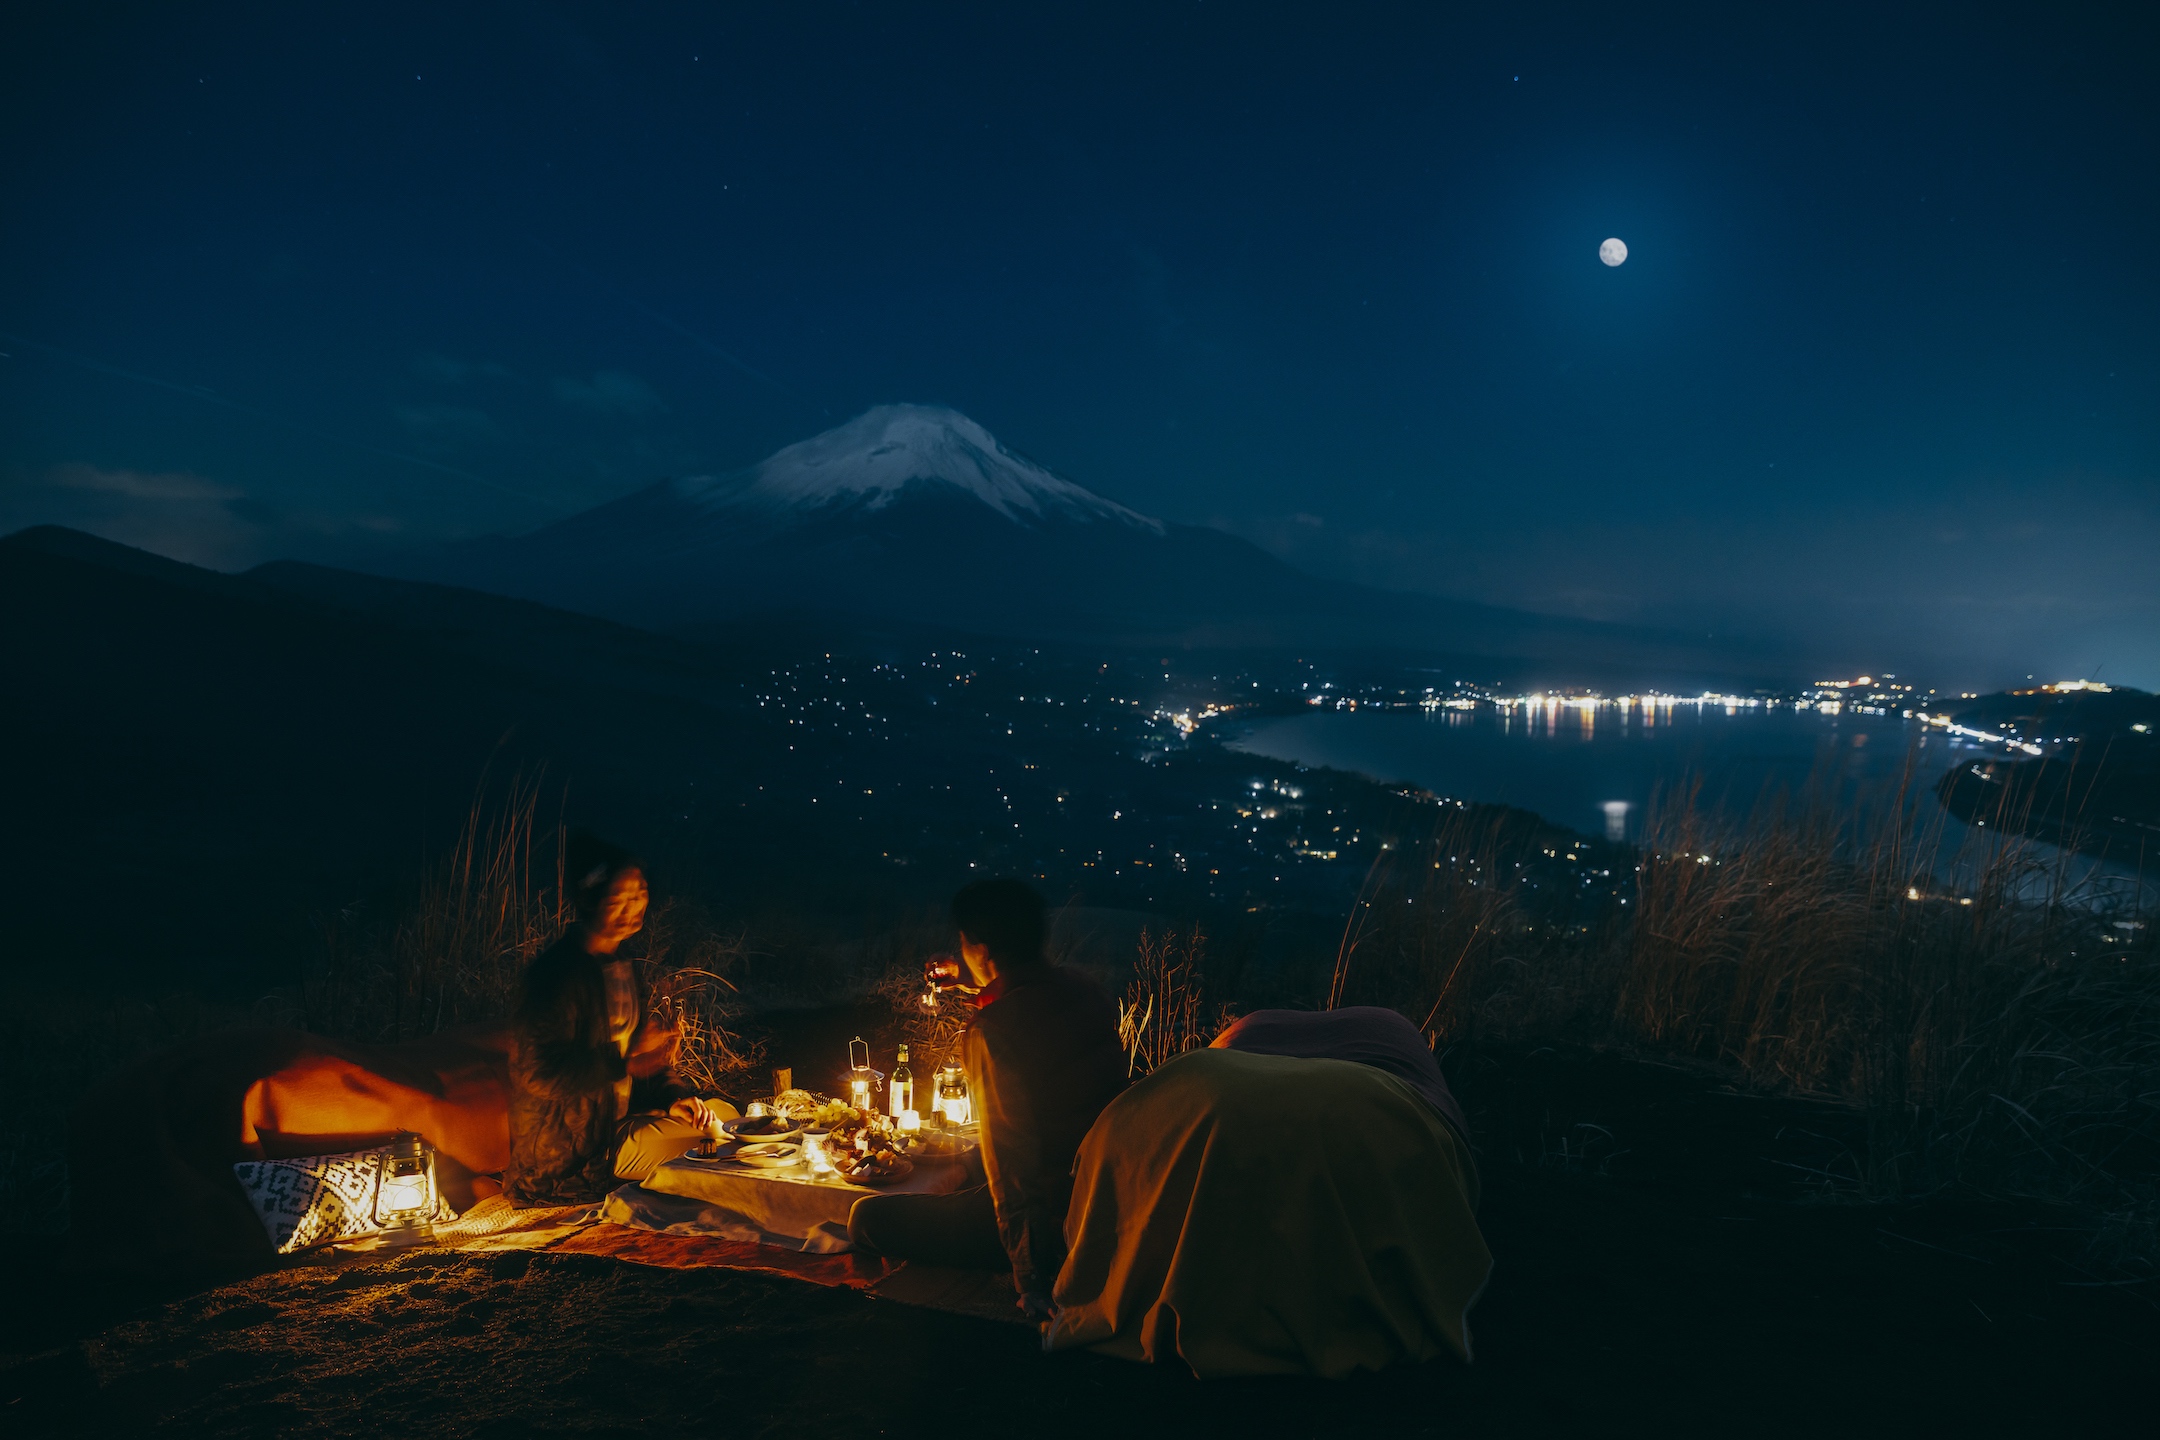 星のや富士 富士の絶景を望みながら秋の月夜を楽しむ1日1組限定プログラム 富士ムーンナイトピクニック 開催 期間 年9月1日 11月30日 半月 満月の夜限定 Newscast